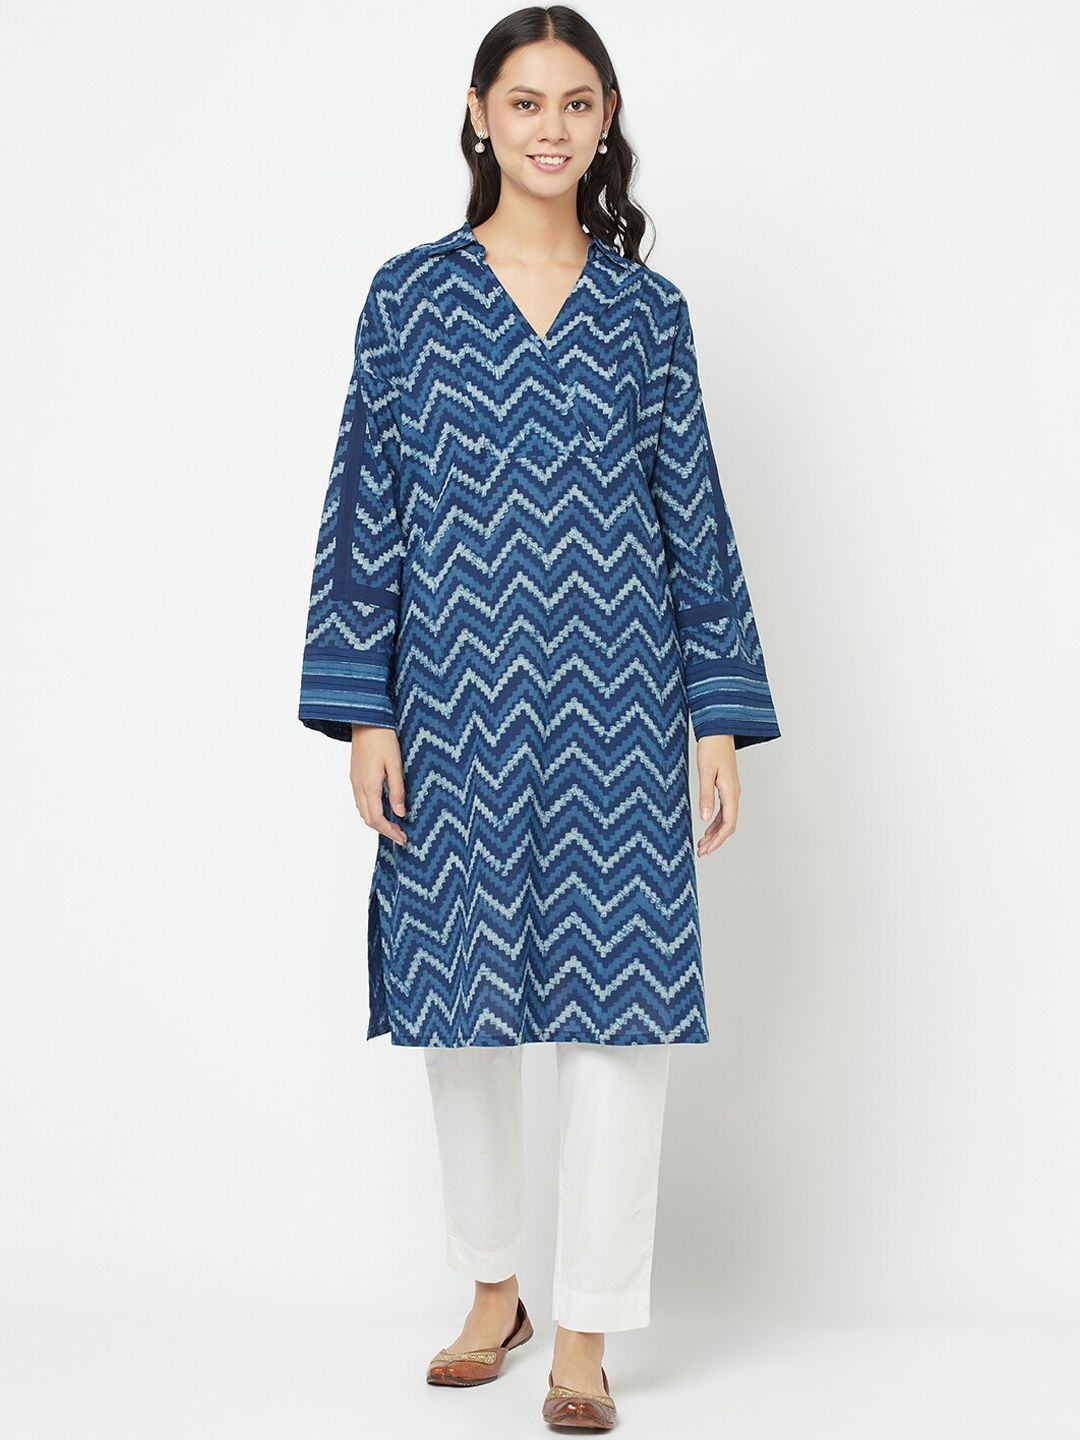 Fabindia Women Blue Geometric Printed Cotton Kurta Price in India